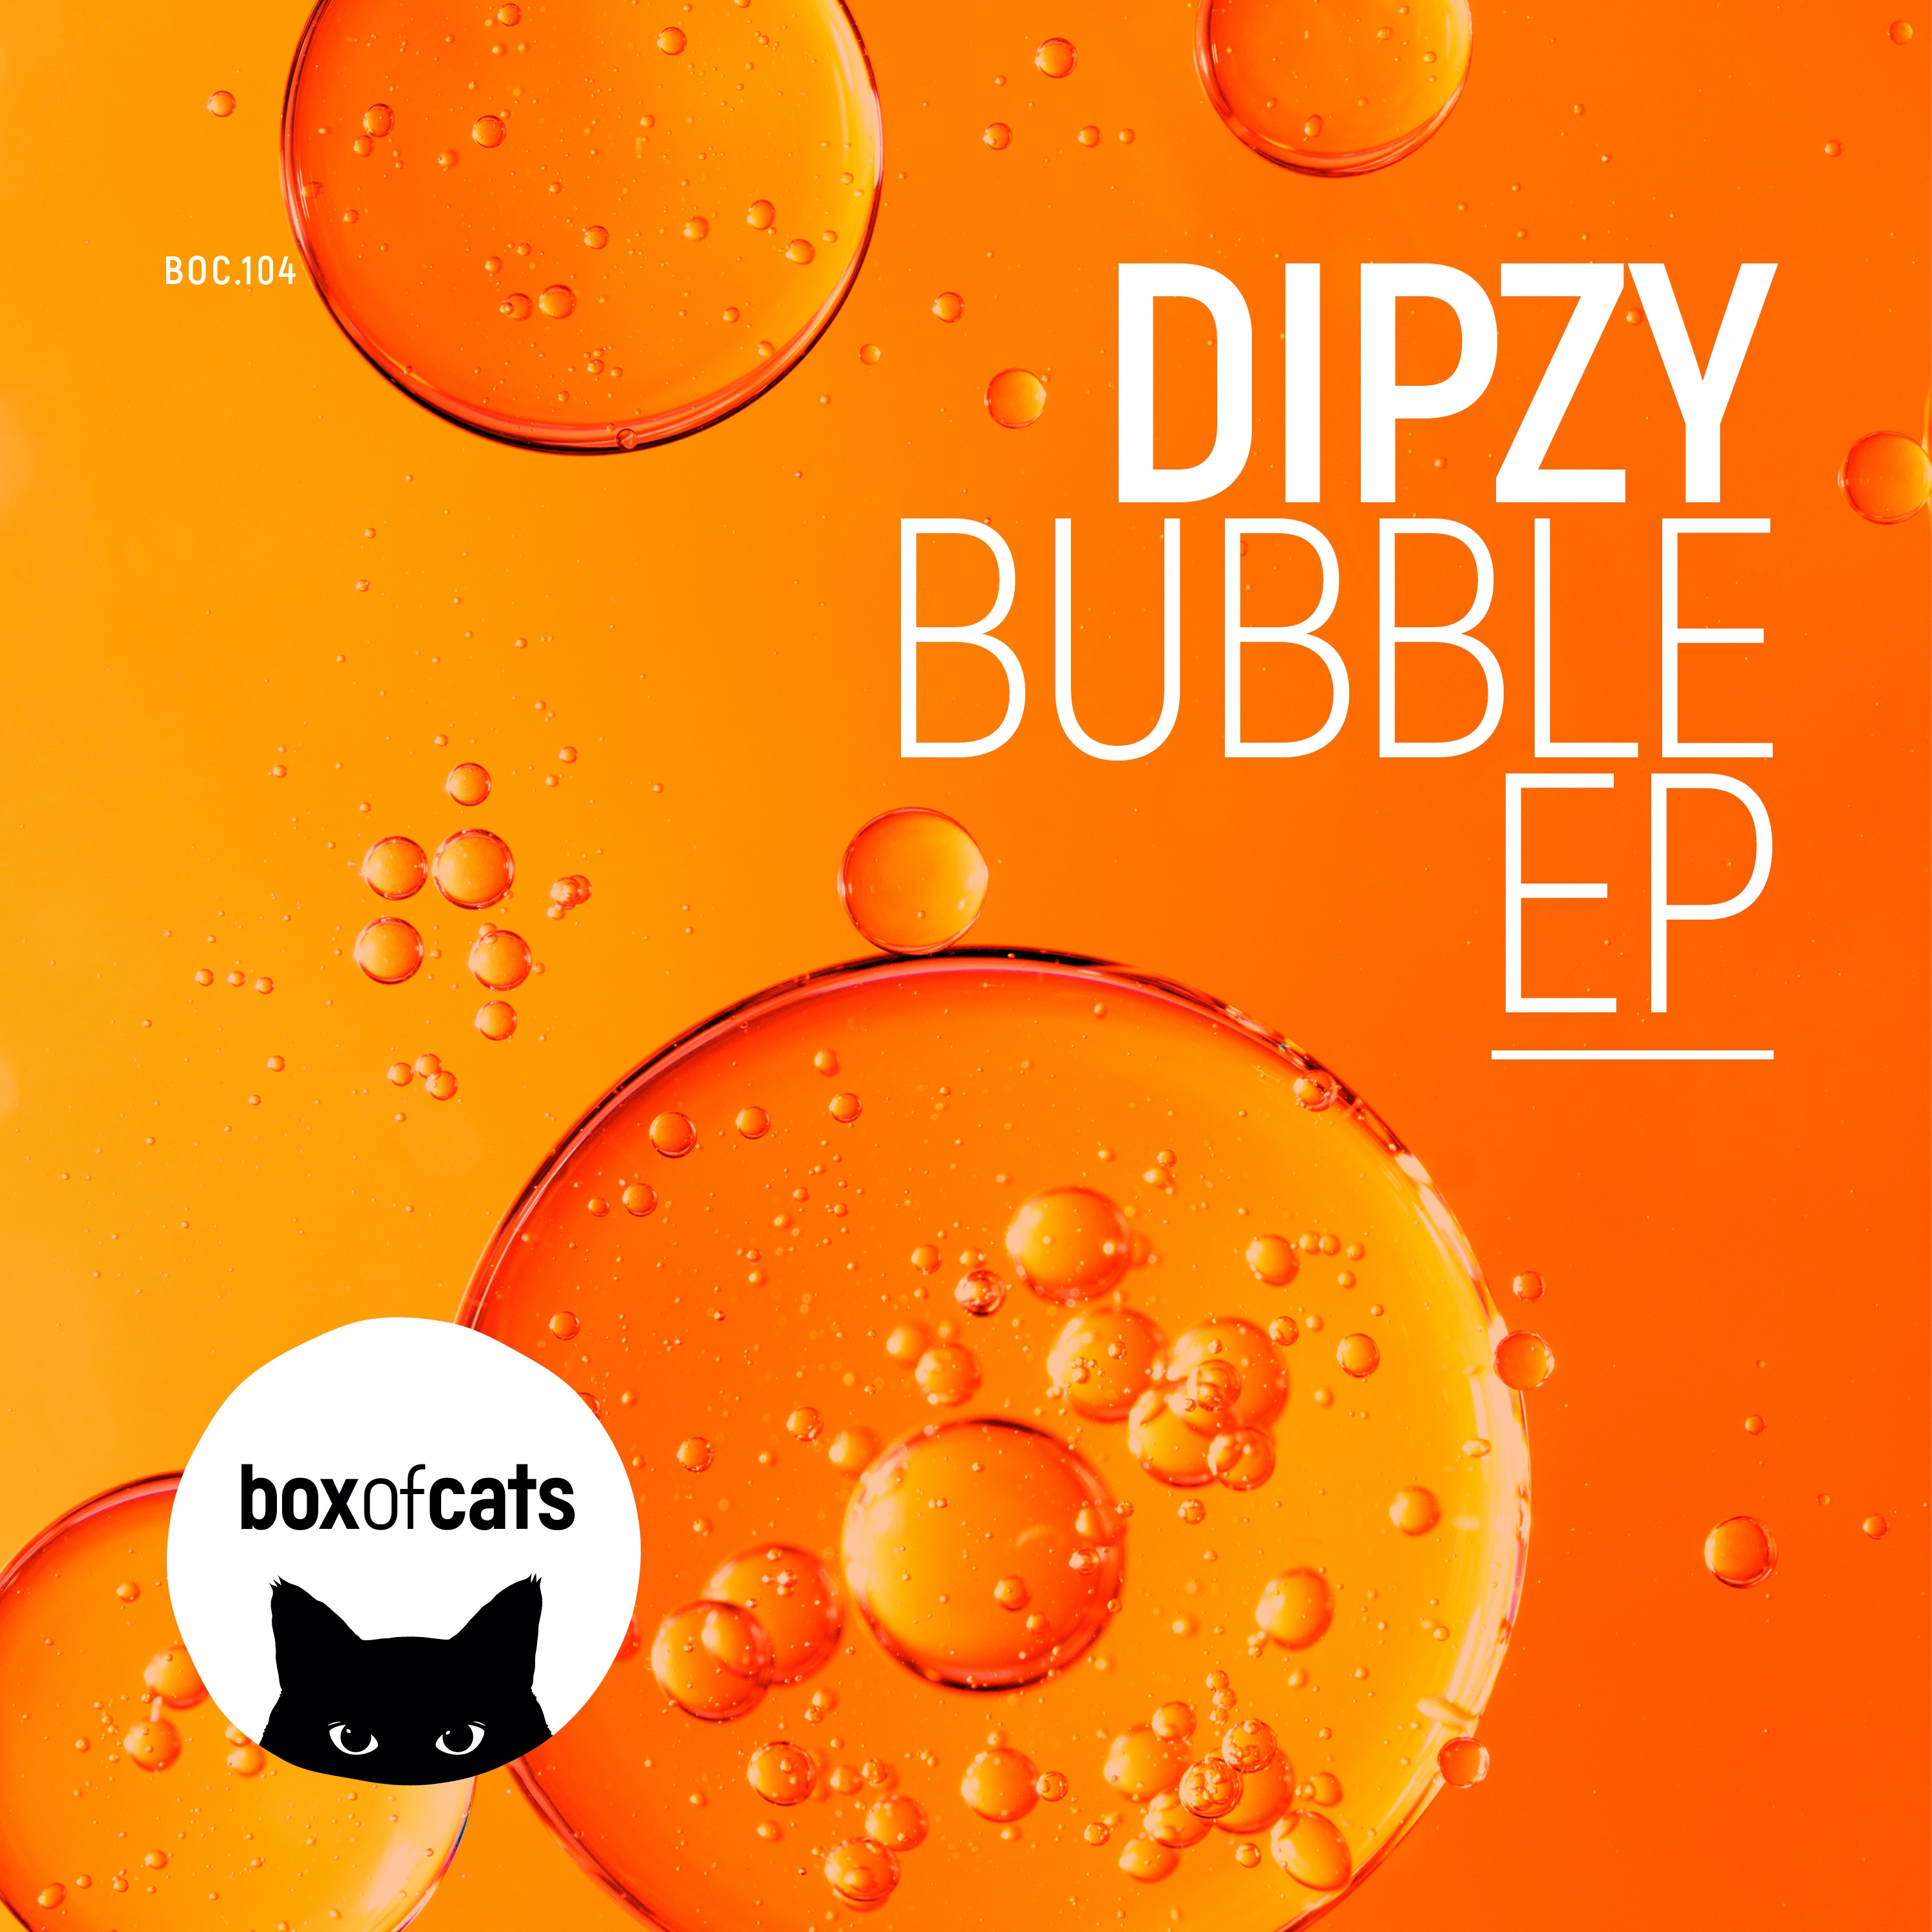 ڈاؤن لوڈ کریں Dipzy - Bubble (BOC104)